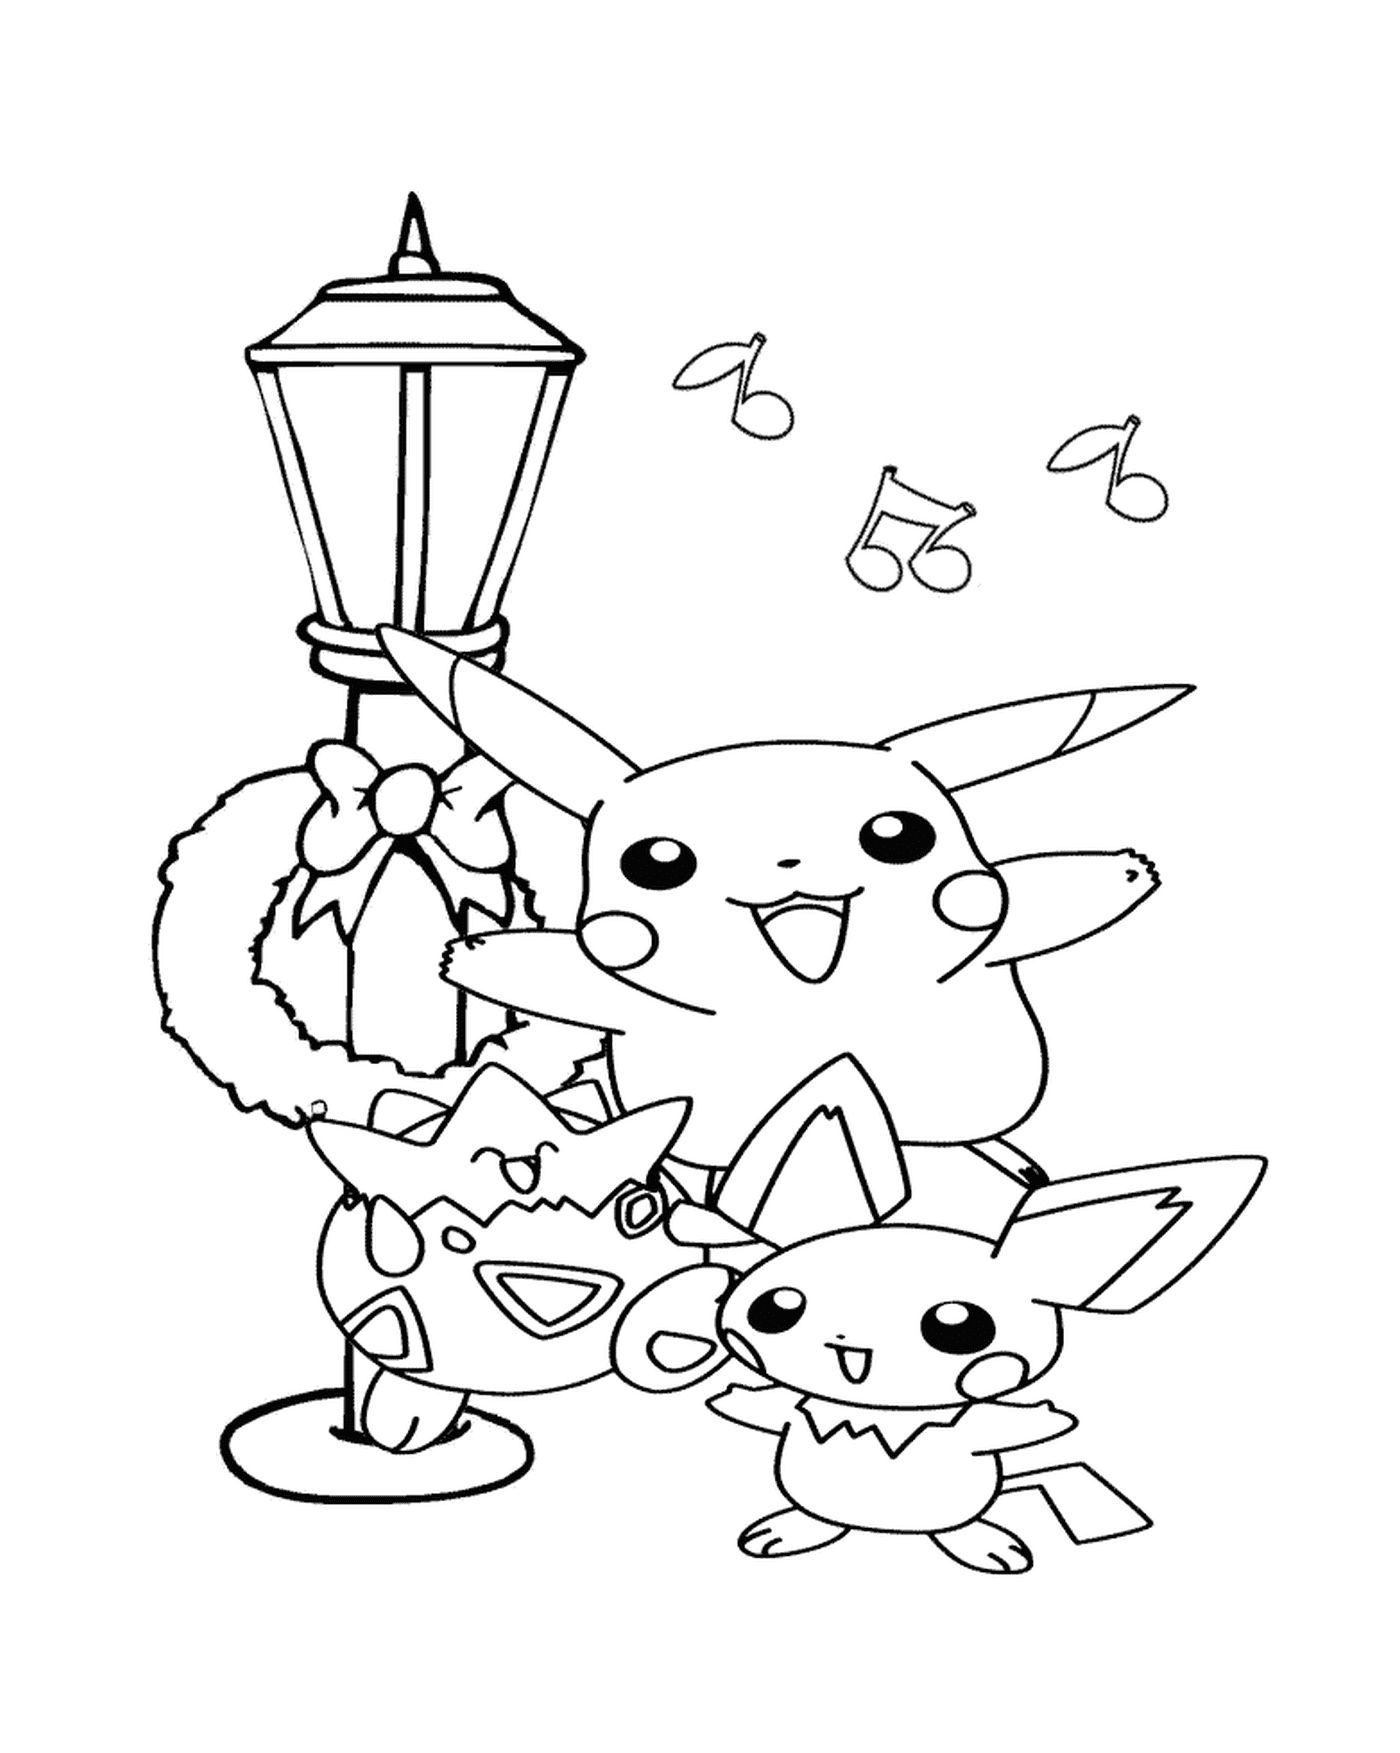  Pikachu e seus amigos cantam 